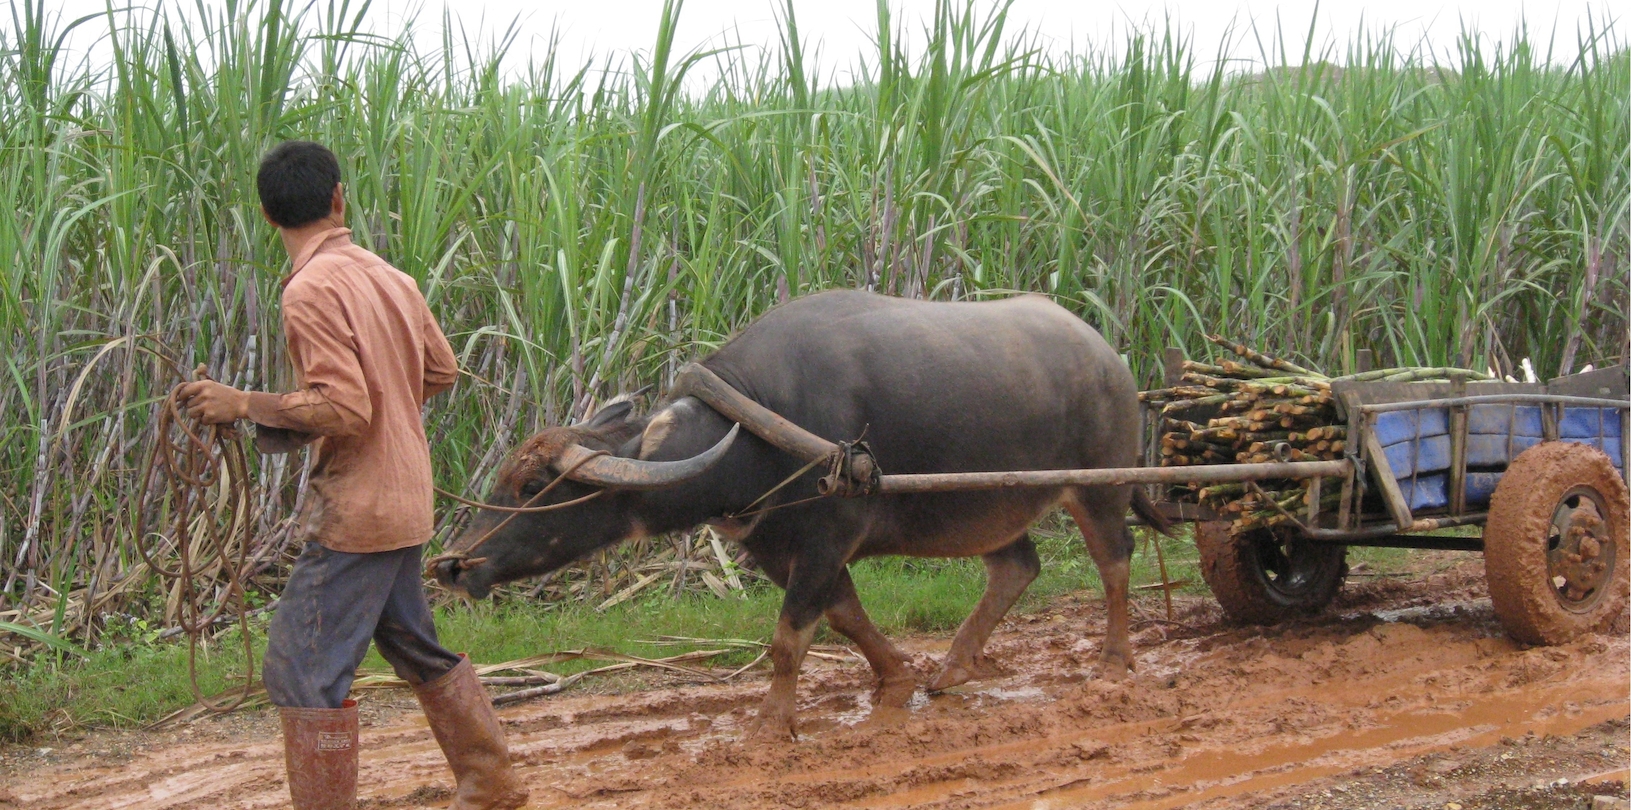 Ox pulling sugarcane